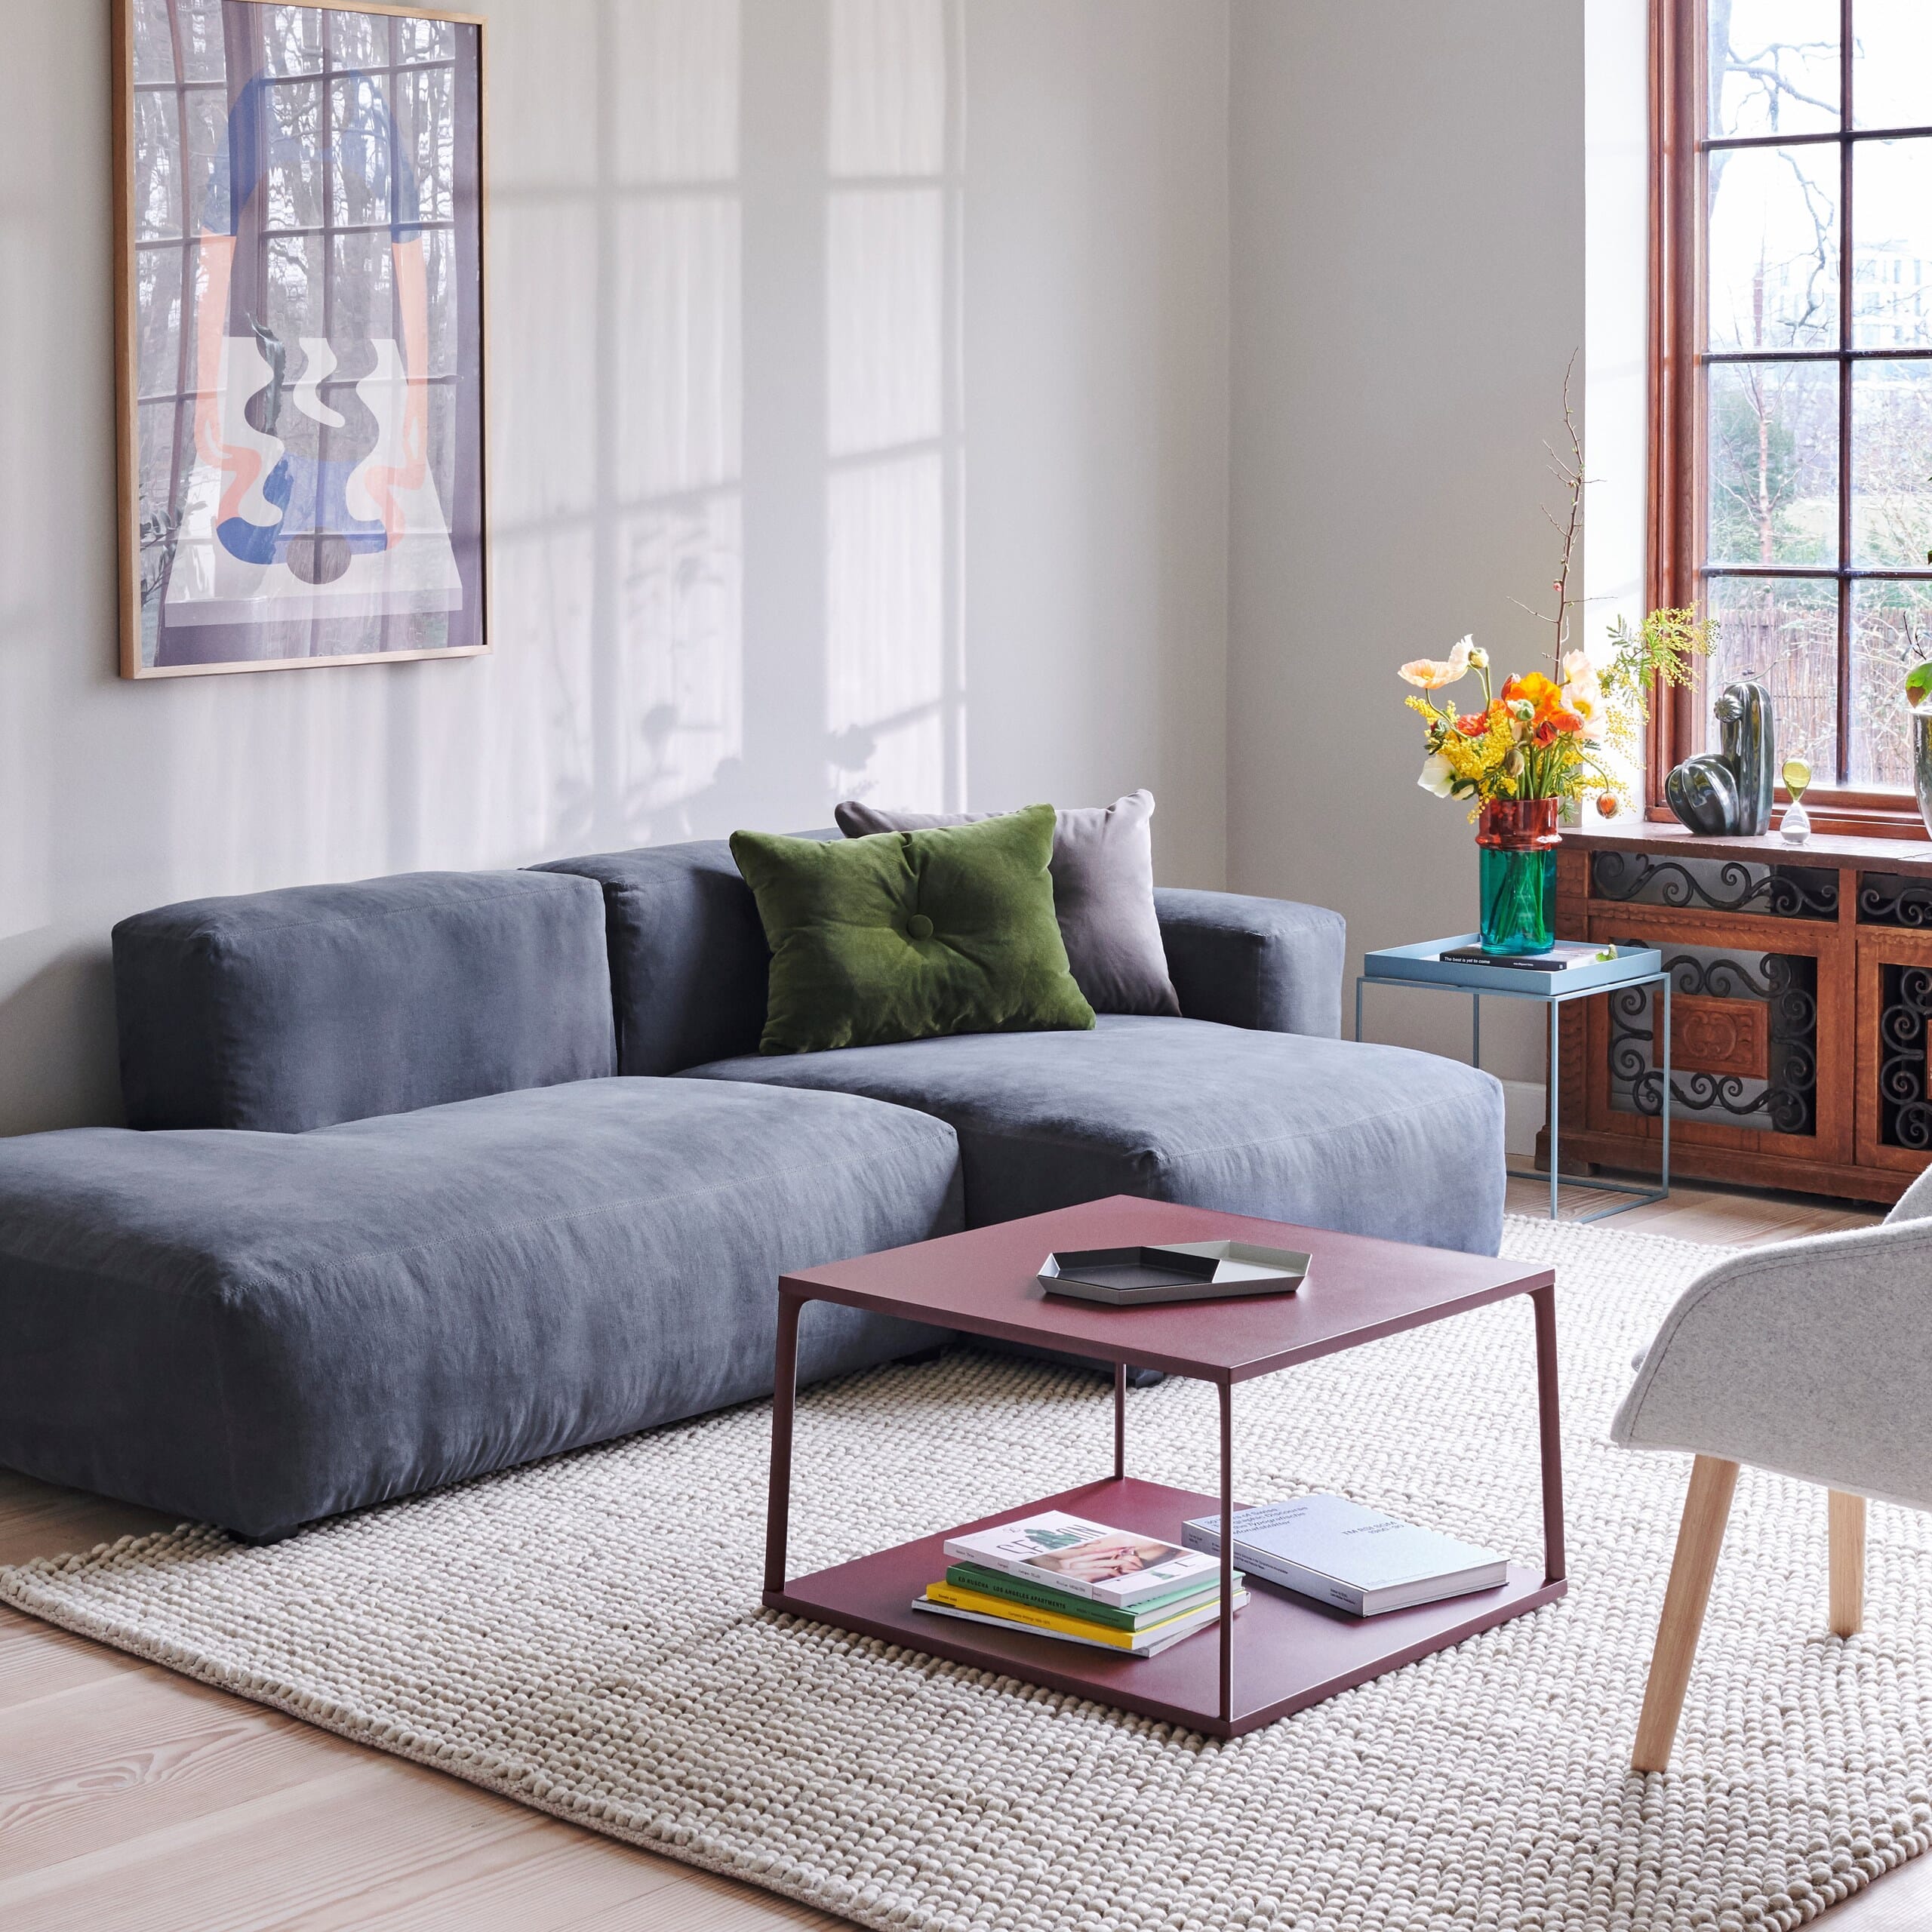 Bilde av Hay - Hay Mags Soft Sofa 2,5 Seter Silk Leather - Lunehjem.no - Interiør På Nett